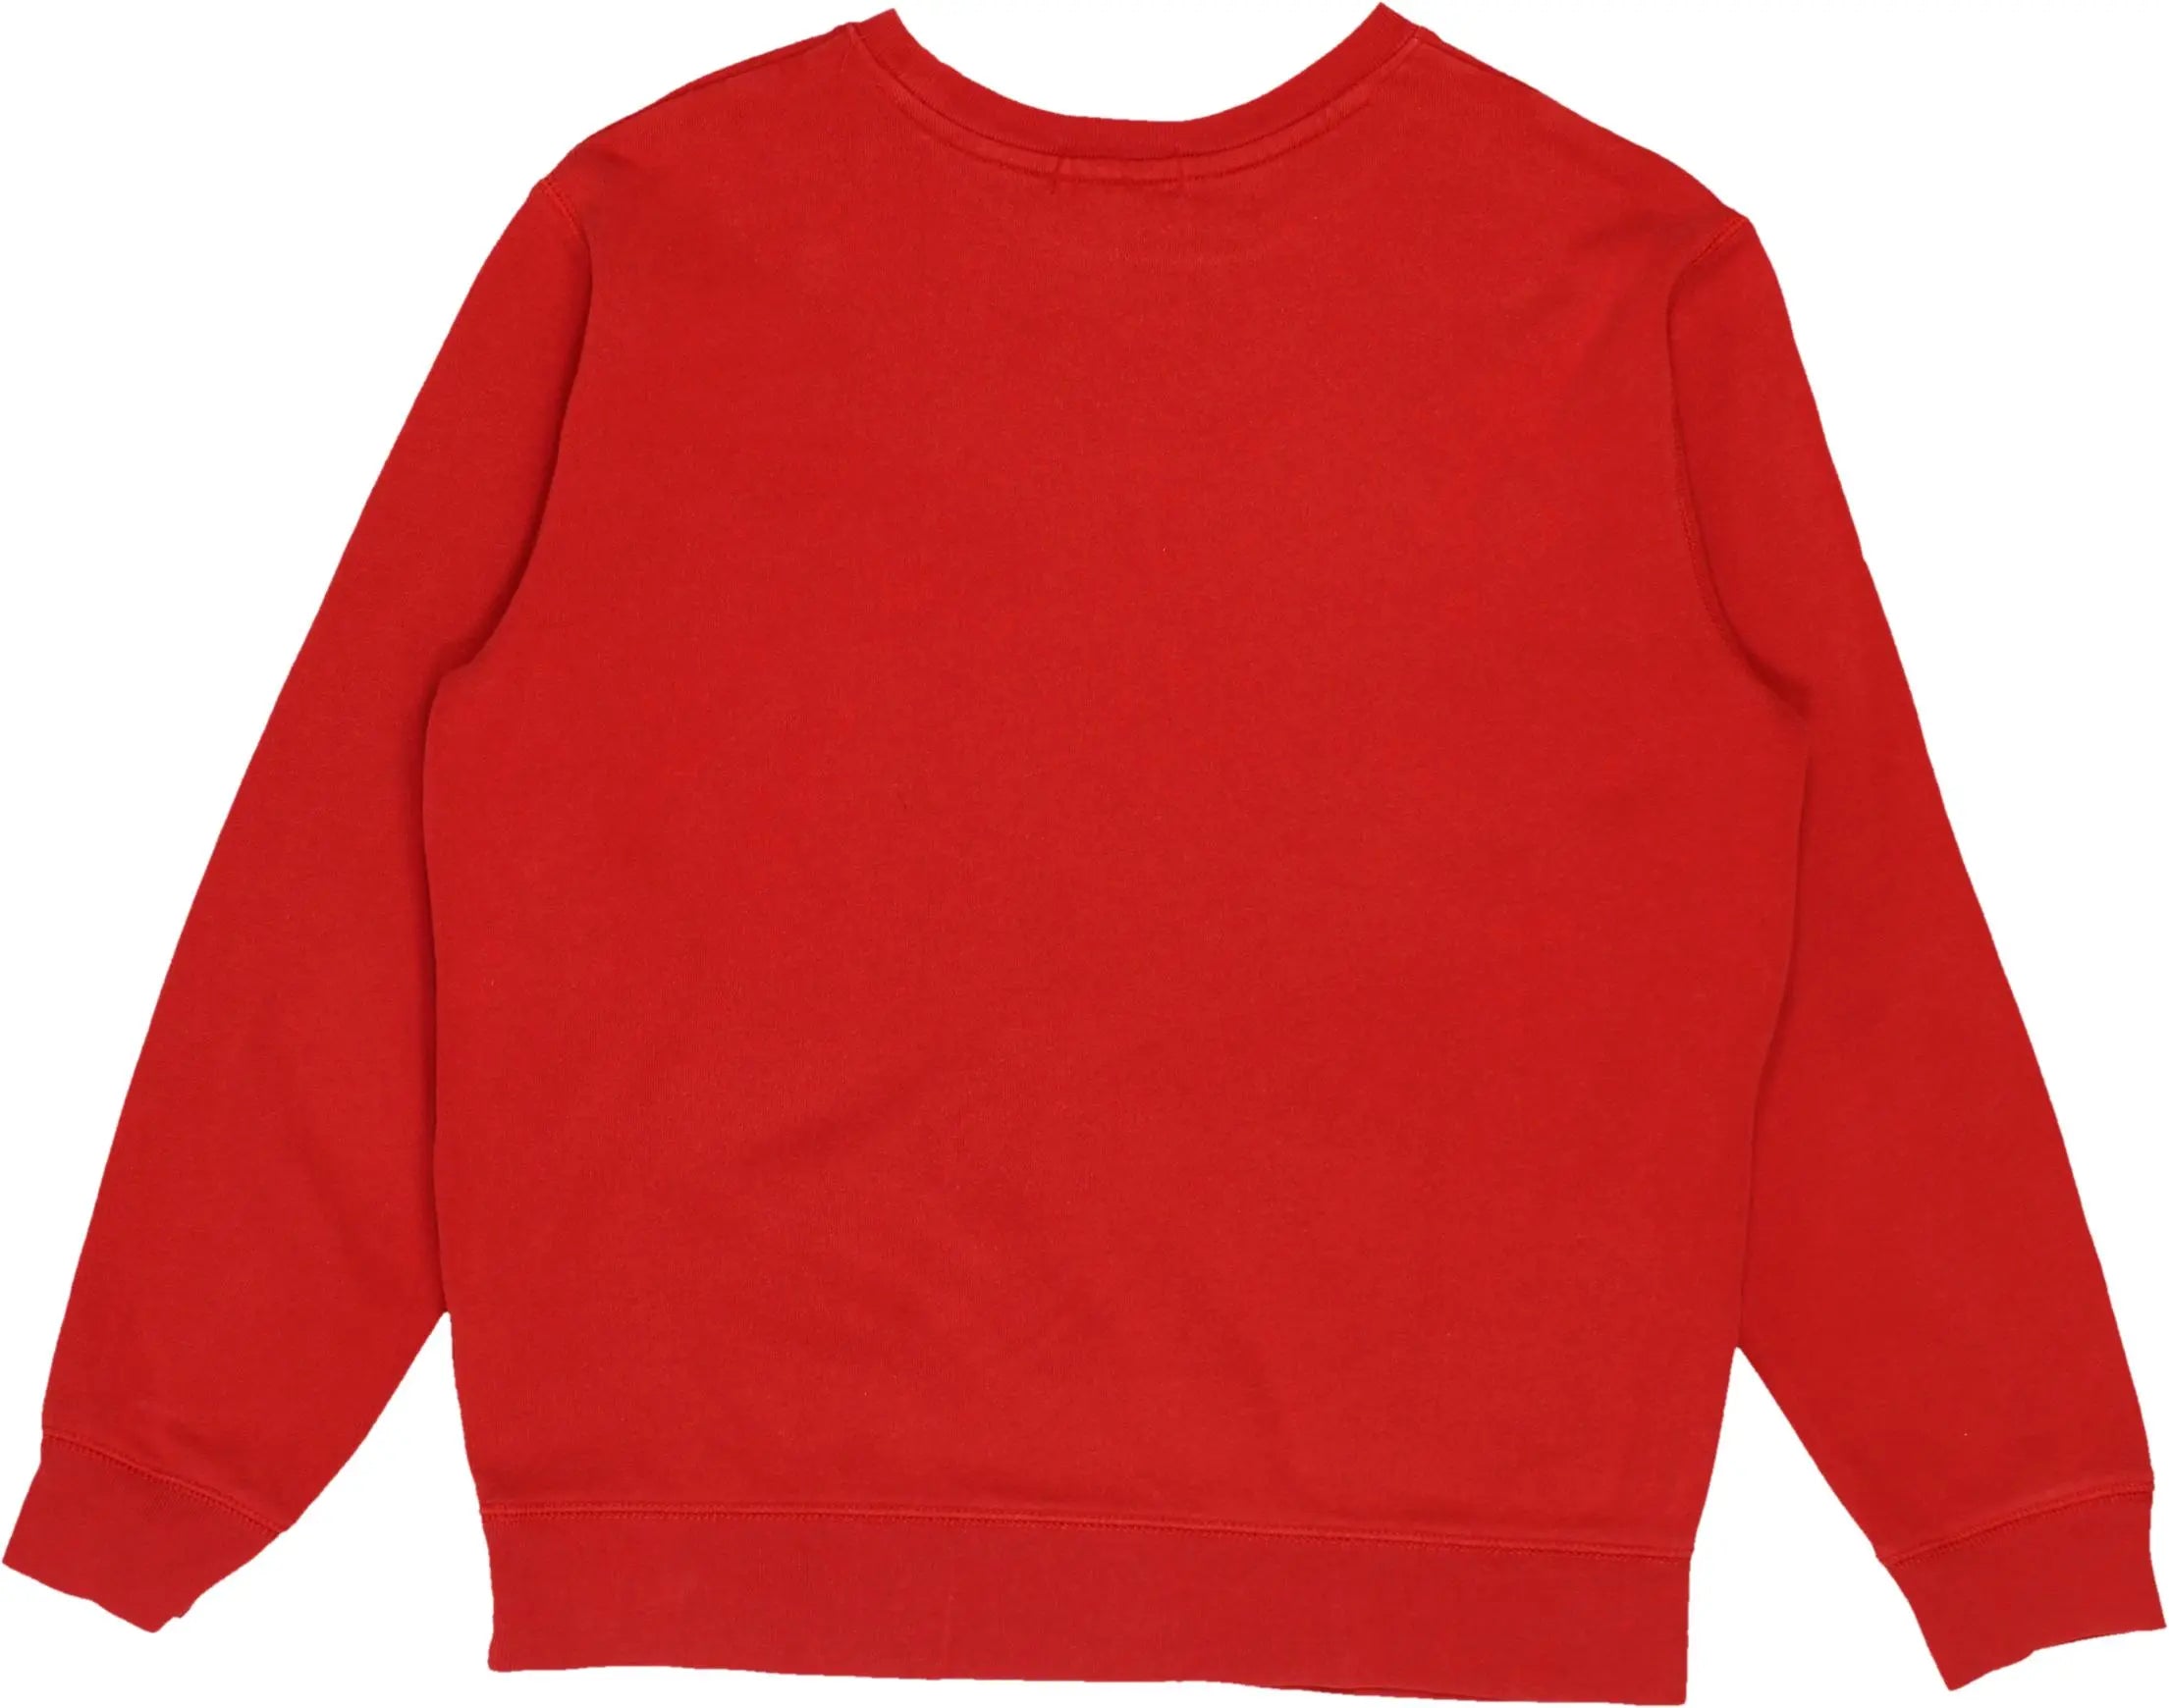 Ralph Lauren - Ralph Lauren Sweater- ThriftTale.com - Vintage and second handclothing